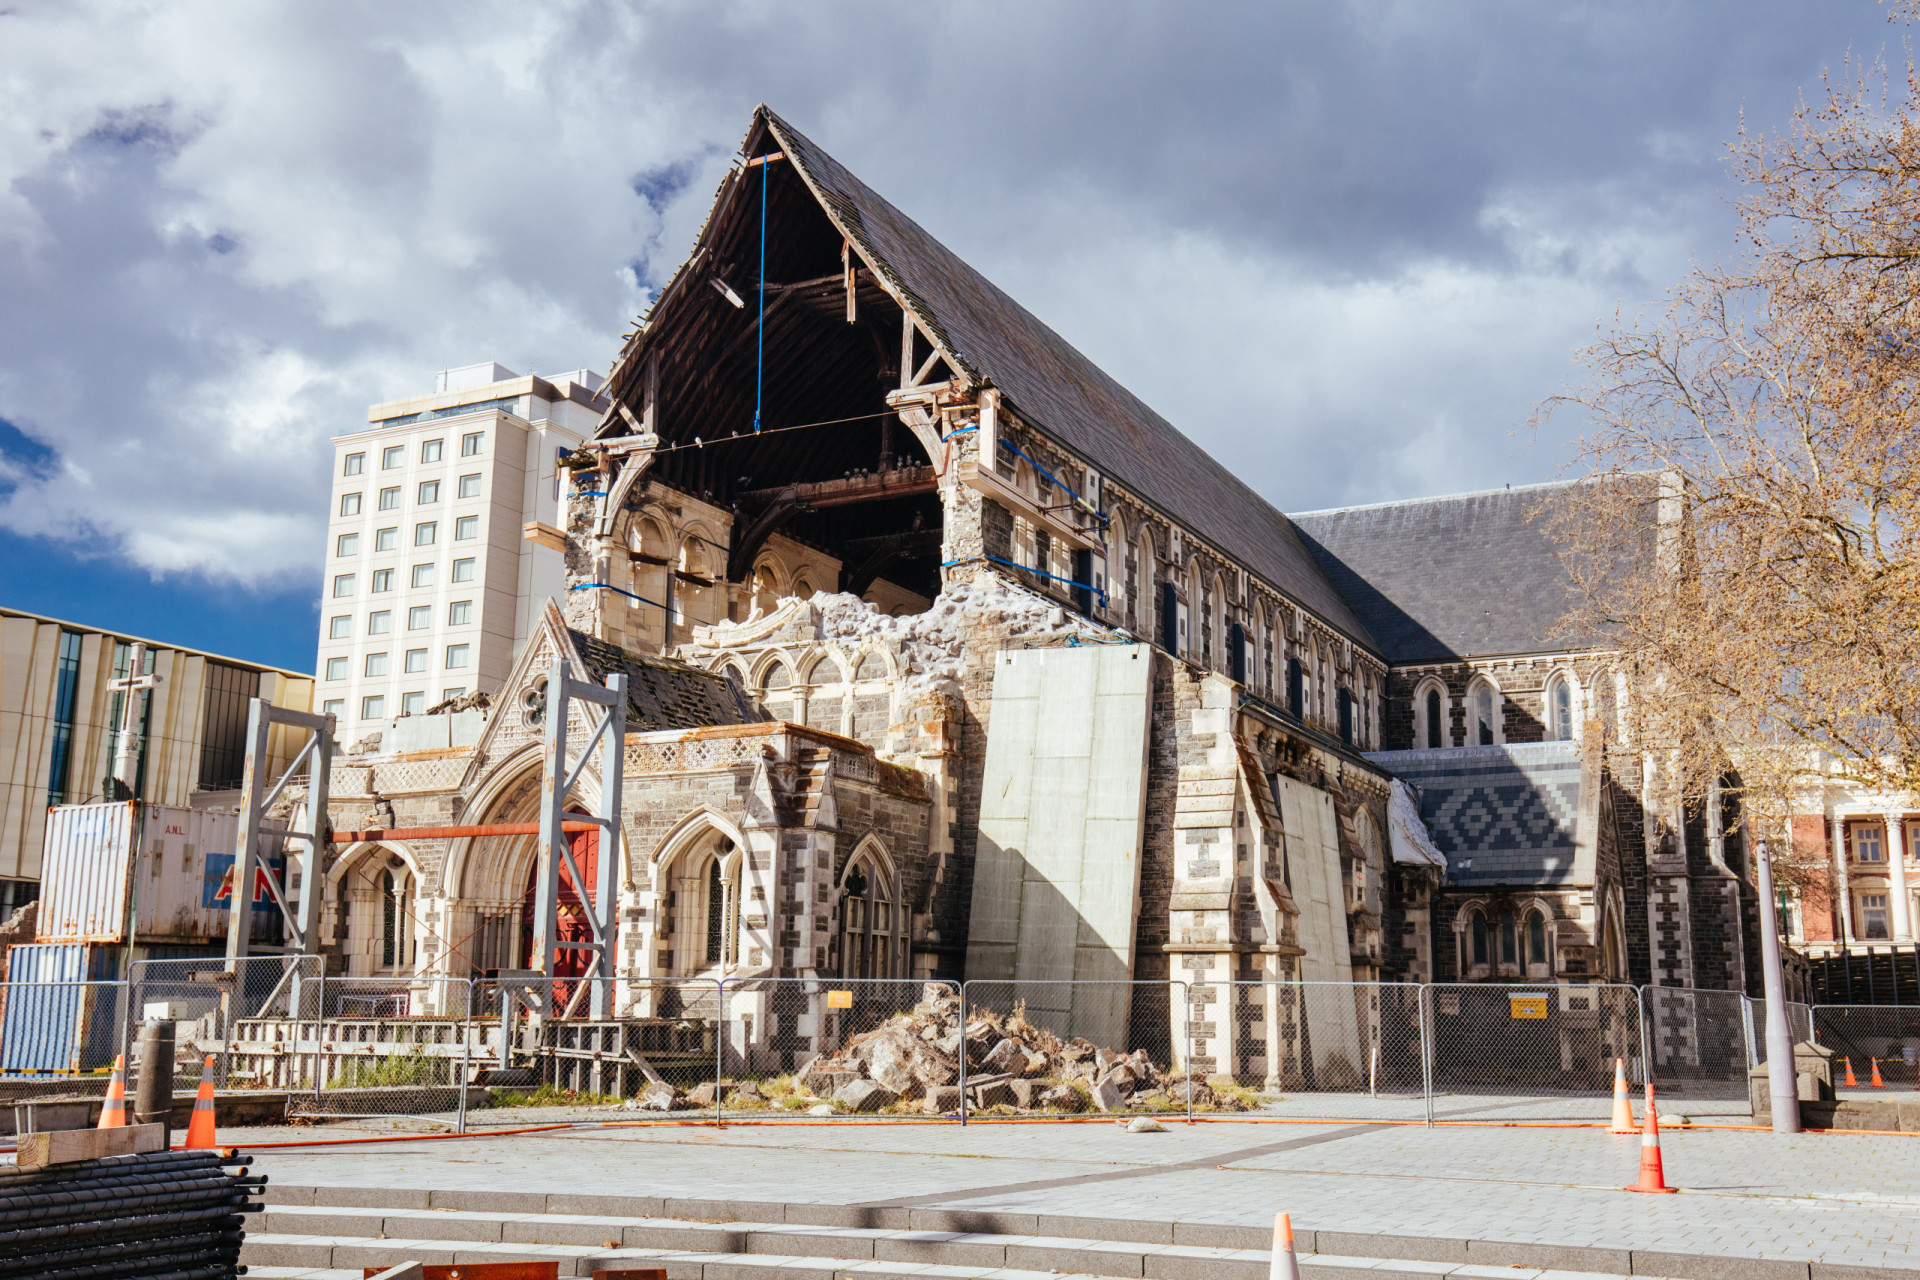 <p>En février 2011, la ville de Christchurch a été rasée par un tremblement de terre dévastateur. Au total, le gouvernement a dépensé environ 40 milliards de dollars néo-zélandais (24,7 milliards de dollars américains ou 22 milliards d'euros) pour reconstruire la ville.</p><p><a href="https://www.msn.com/fr-fr/community/channel/vid-7xx8mnucu55yw63we9va2gwr7uihbxwc68fxqp25x6tg4ftibpra?cvid=94631541bc0f4f89bfd59158d696ad7e">Suivez-nous et accédez tous les jours à du contenu exclusif</a></p>